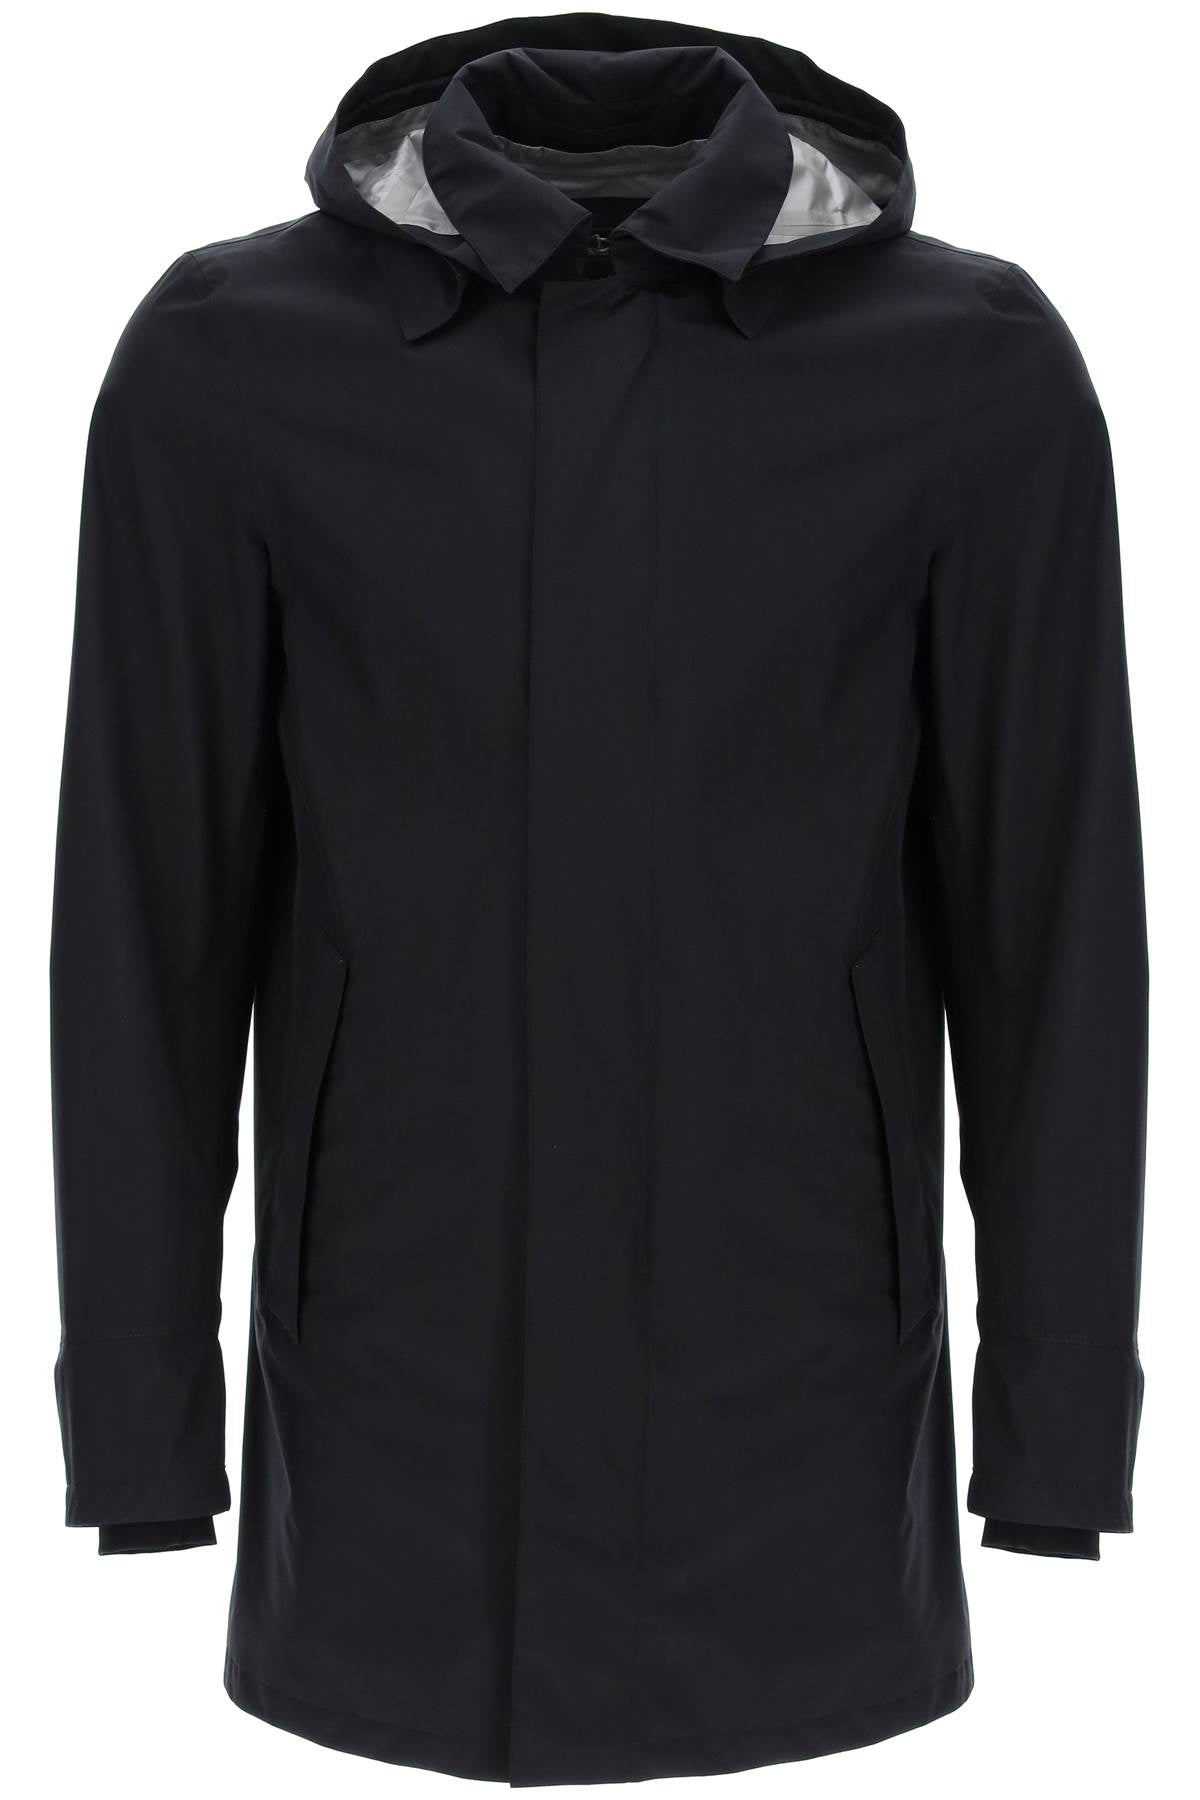 HERNO Men's Black Hooded Jacket for Spring/Summer 2024